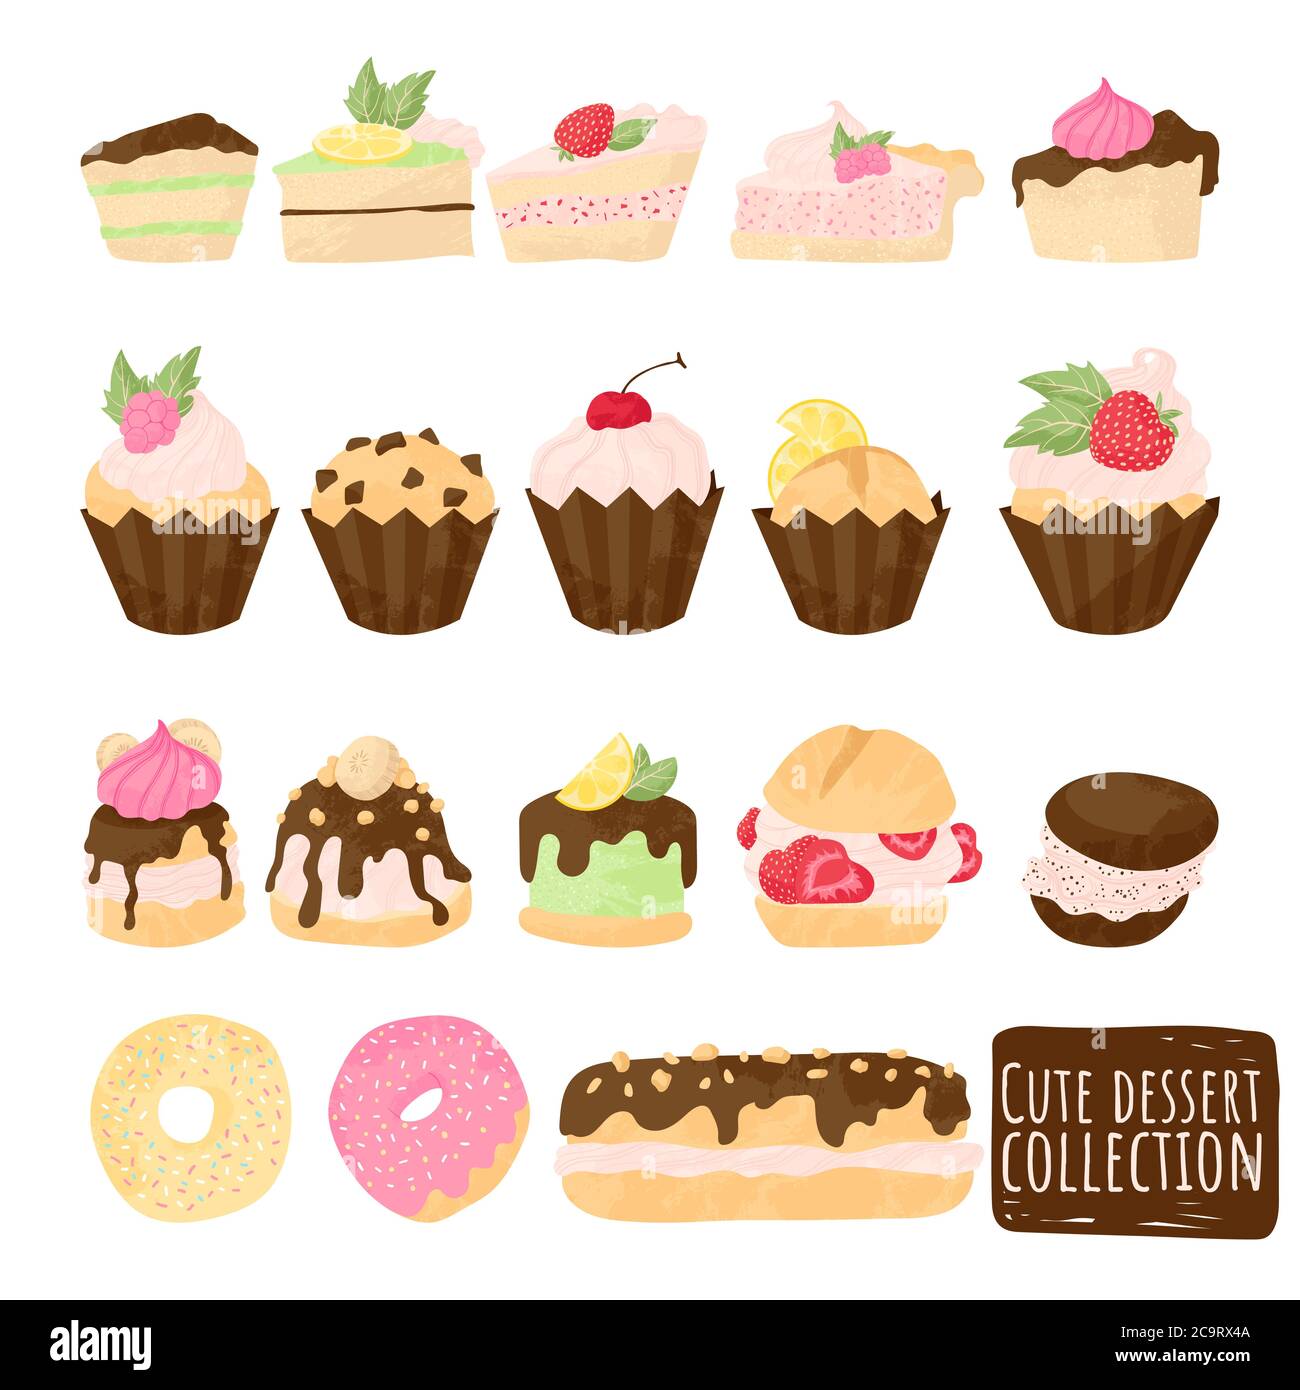 Kuchen Vektor Schokolade Süßwaren Cupcake und süße Konfektion Dessert mit Schlagsahne, Beeren und Früchte. Vektor-Illustration Set flach Cartoon Stock Vektor